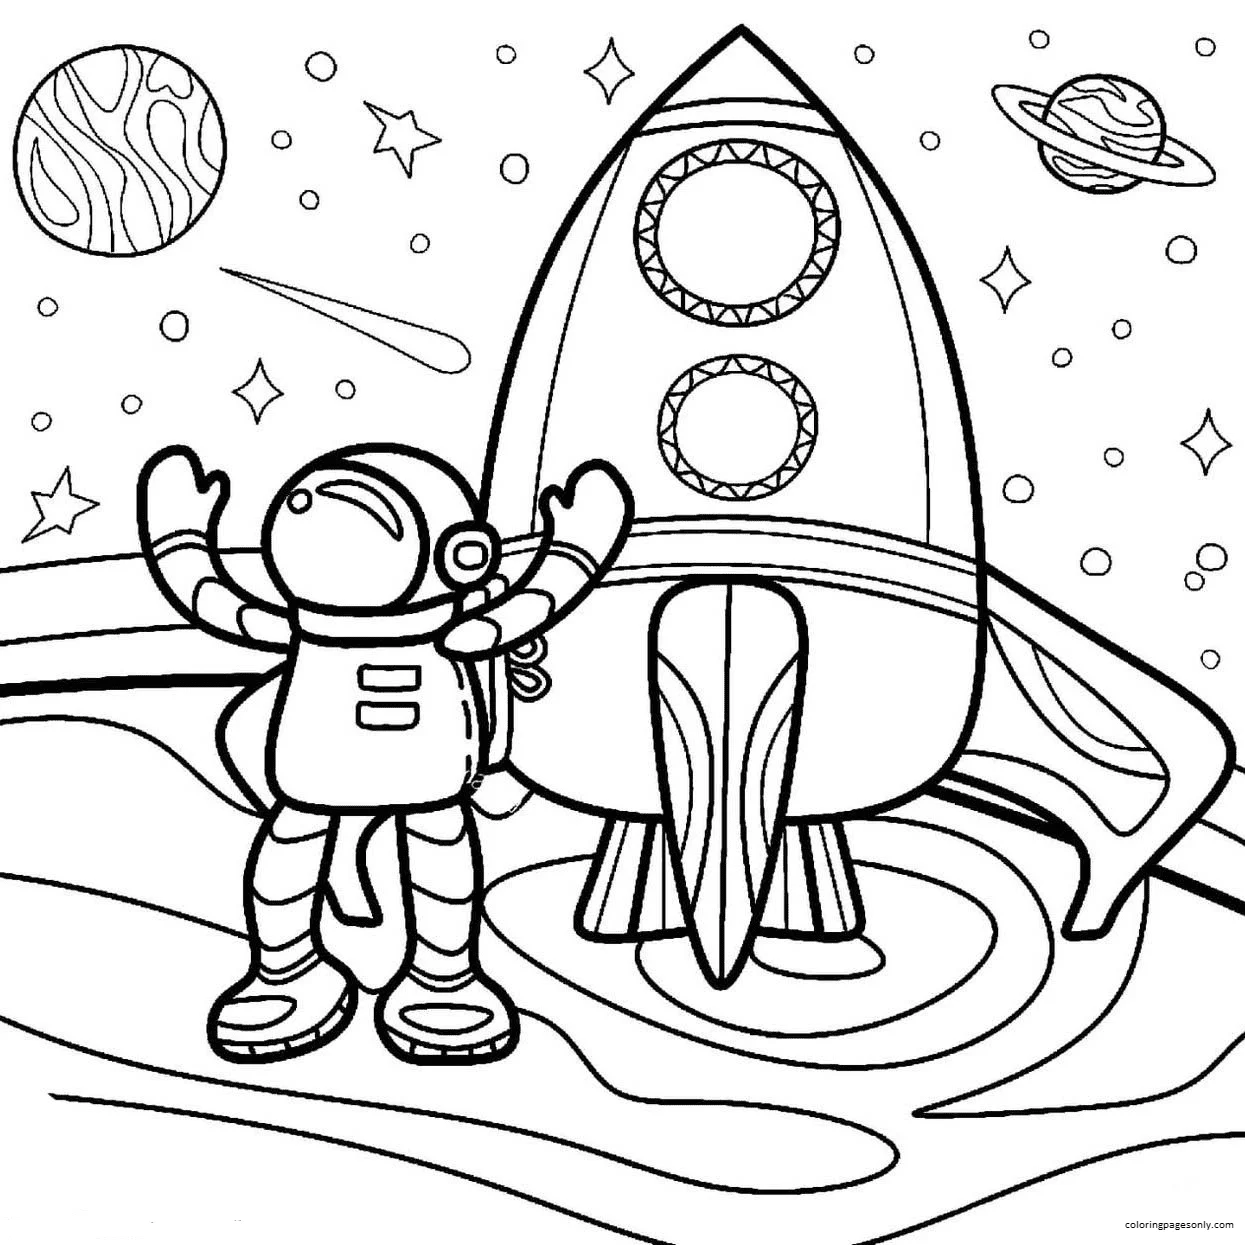 Astronaute de dessin animé avec Rocket 1 de Rocket